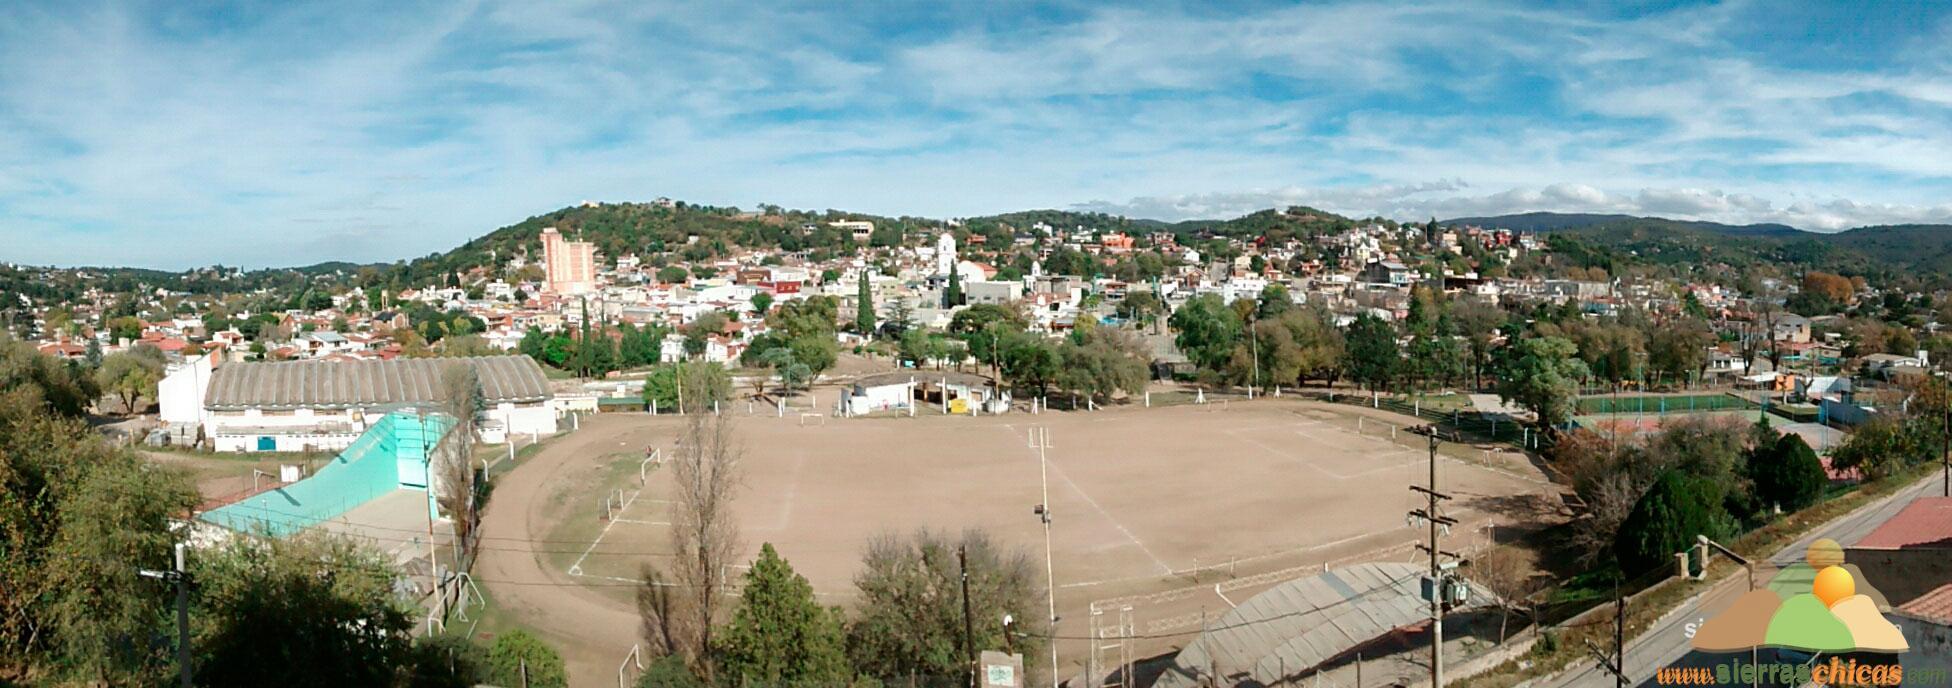 Vista Panorámica del centro de Rio Ceballos